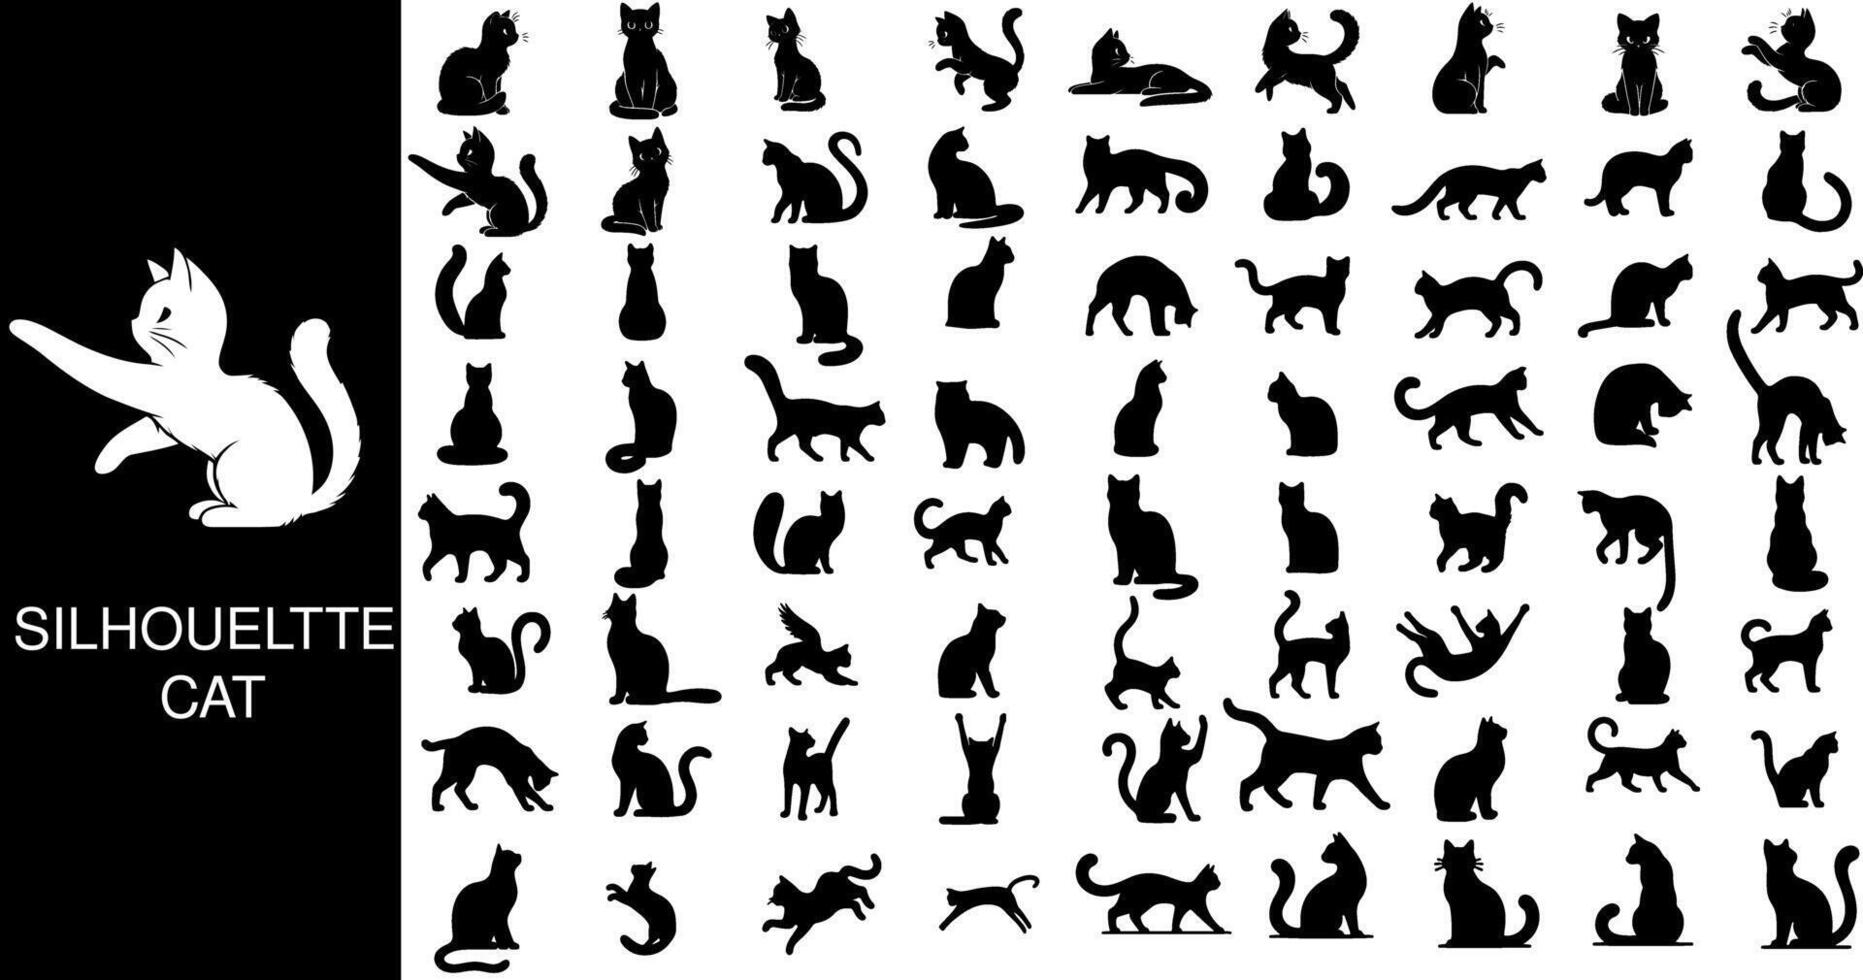 kat silhouet verzameling, met elegant kat vormen dat overbrengen de elegantie en mysterie van katten door silhouet kunst vector